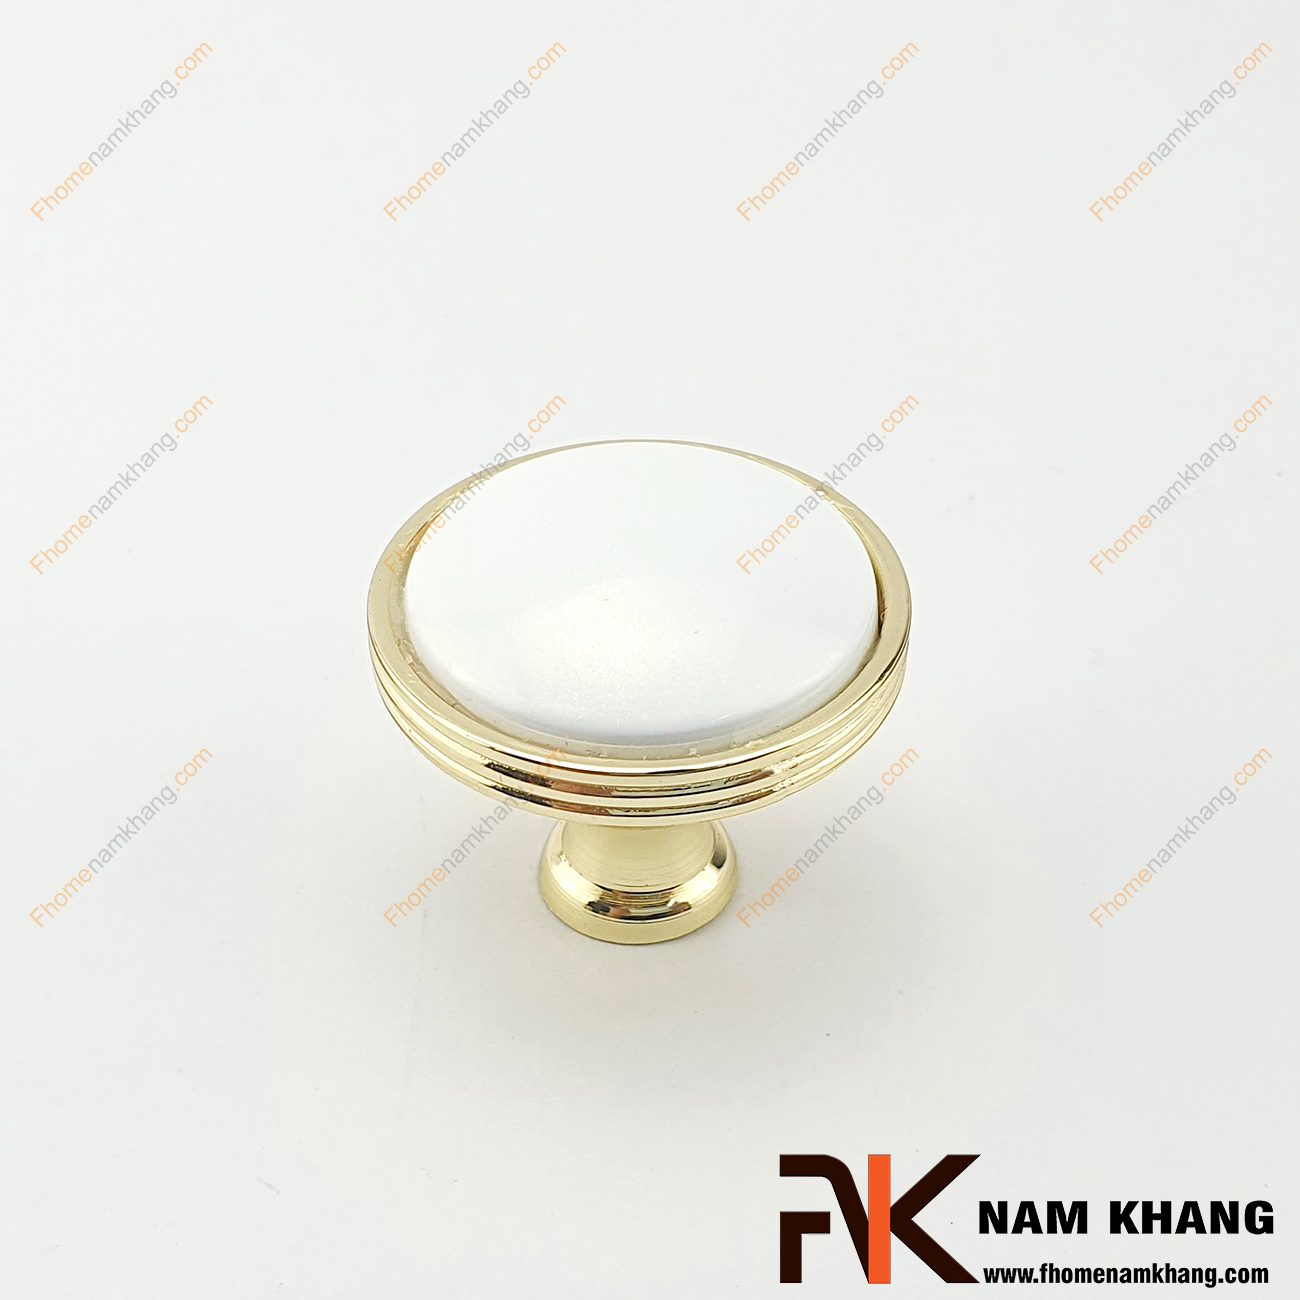 Núm cửa tủ tròn bằng sứ trắng viền vàng NK020-TV2 có thiết kế khá đơn giản từ hợp kim mạ vàng bọc quanh sứ trắng bóng cao cấp. Khá đơn giản nhưng lại toát lên vẻ ngoài tinh tế và rất sang trọng .